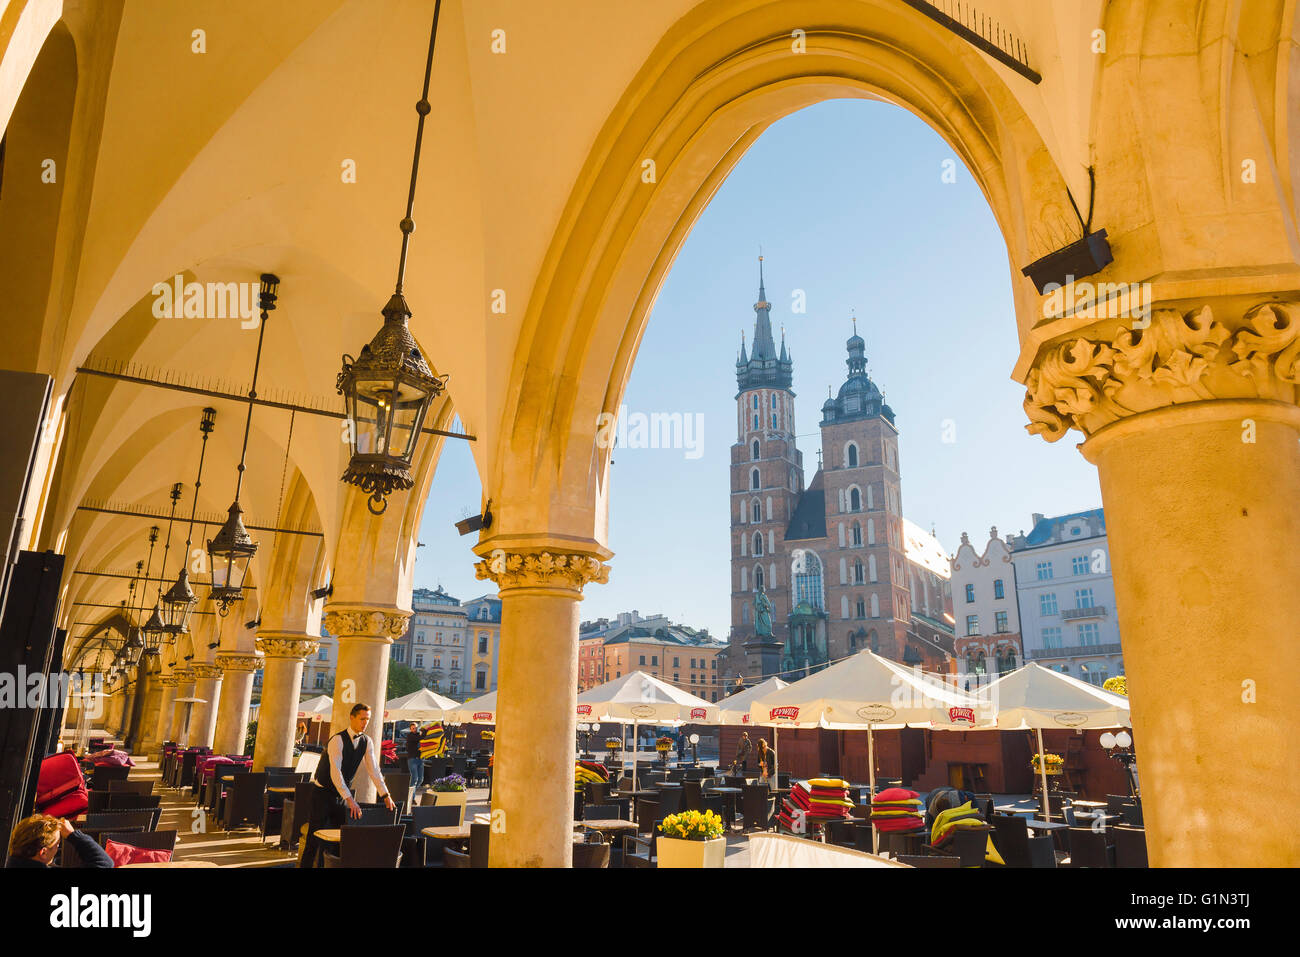 La piazza del mercato di Cracovia, vista dal colonnato del rinascimento panno sala verso la chiesa di Santa Maria in Piazza del Mercato di Cracovia in Polonia. Foto Stock